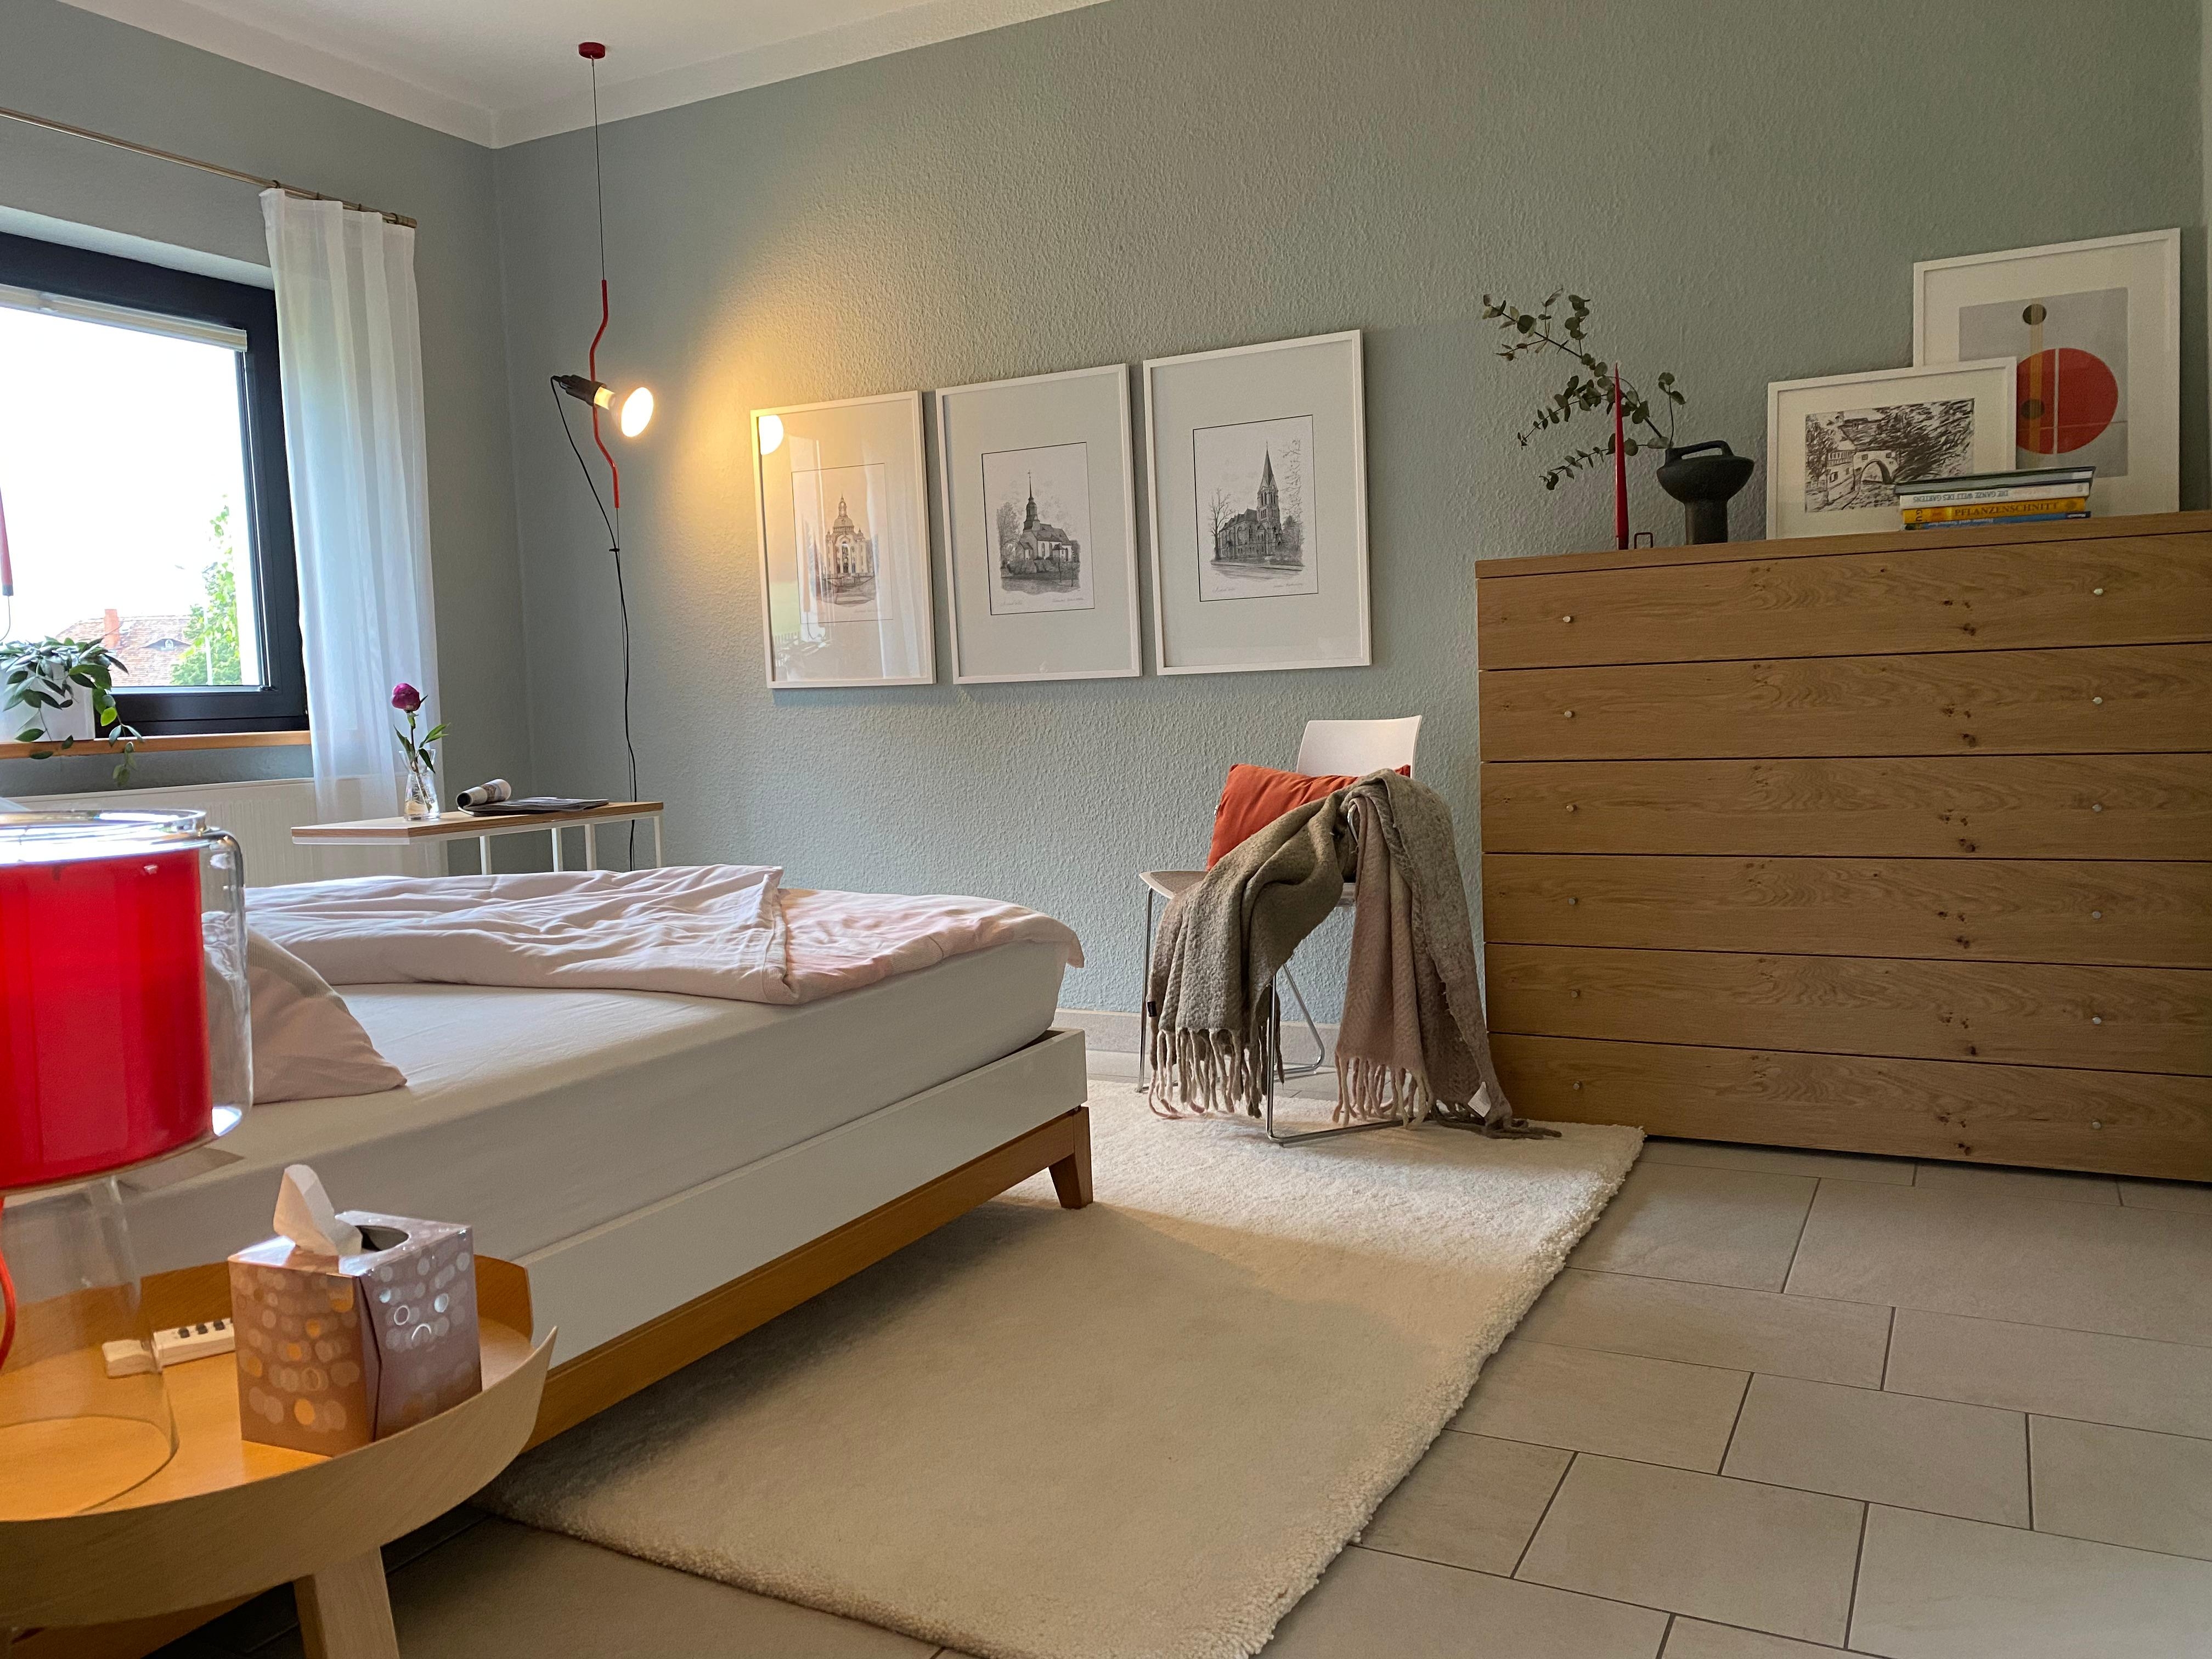 mein renoviertes ganz persönliches kleines Reich...
#Schlafzimmer#hygge#bedroom#Bilderwand#kommode#cozy#interior#Deko
